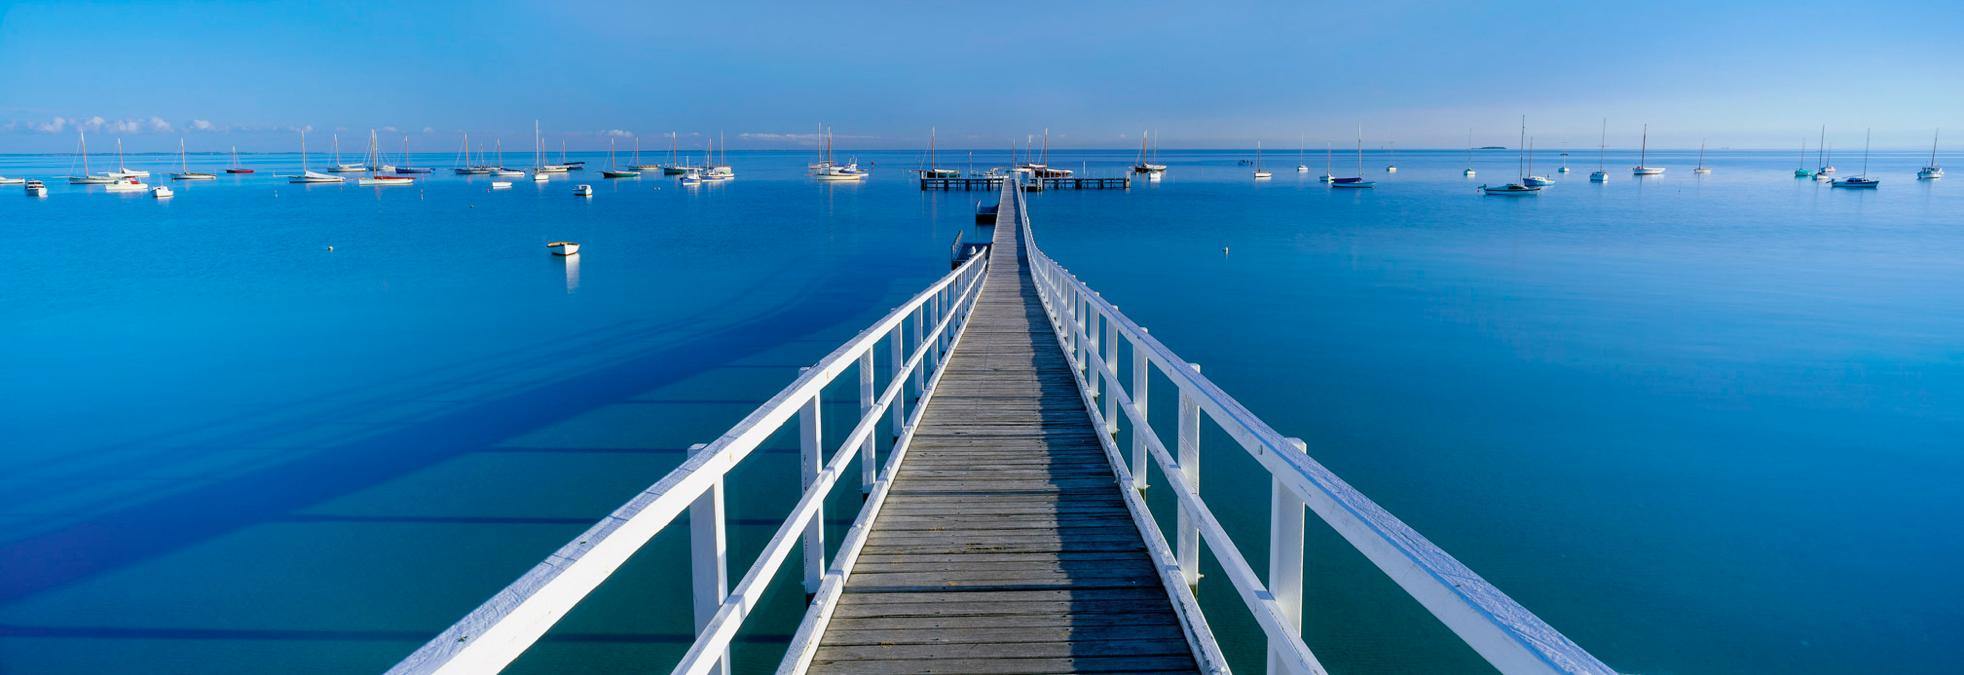 A long safety wooden bridge over the sea, Sorrento Pier - Mornington Peninsula VIC